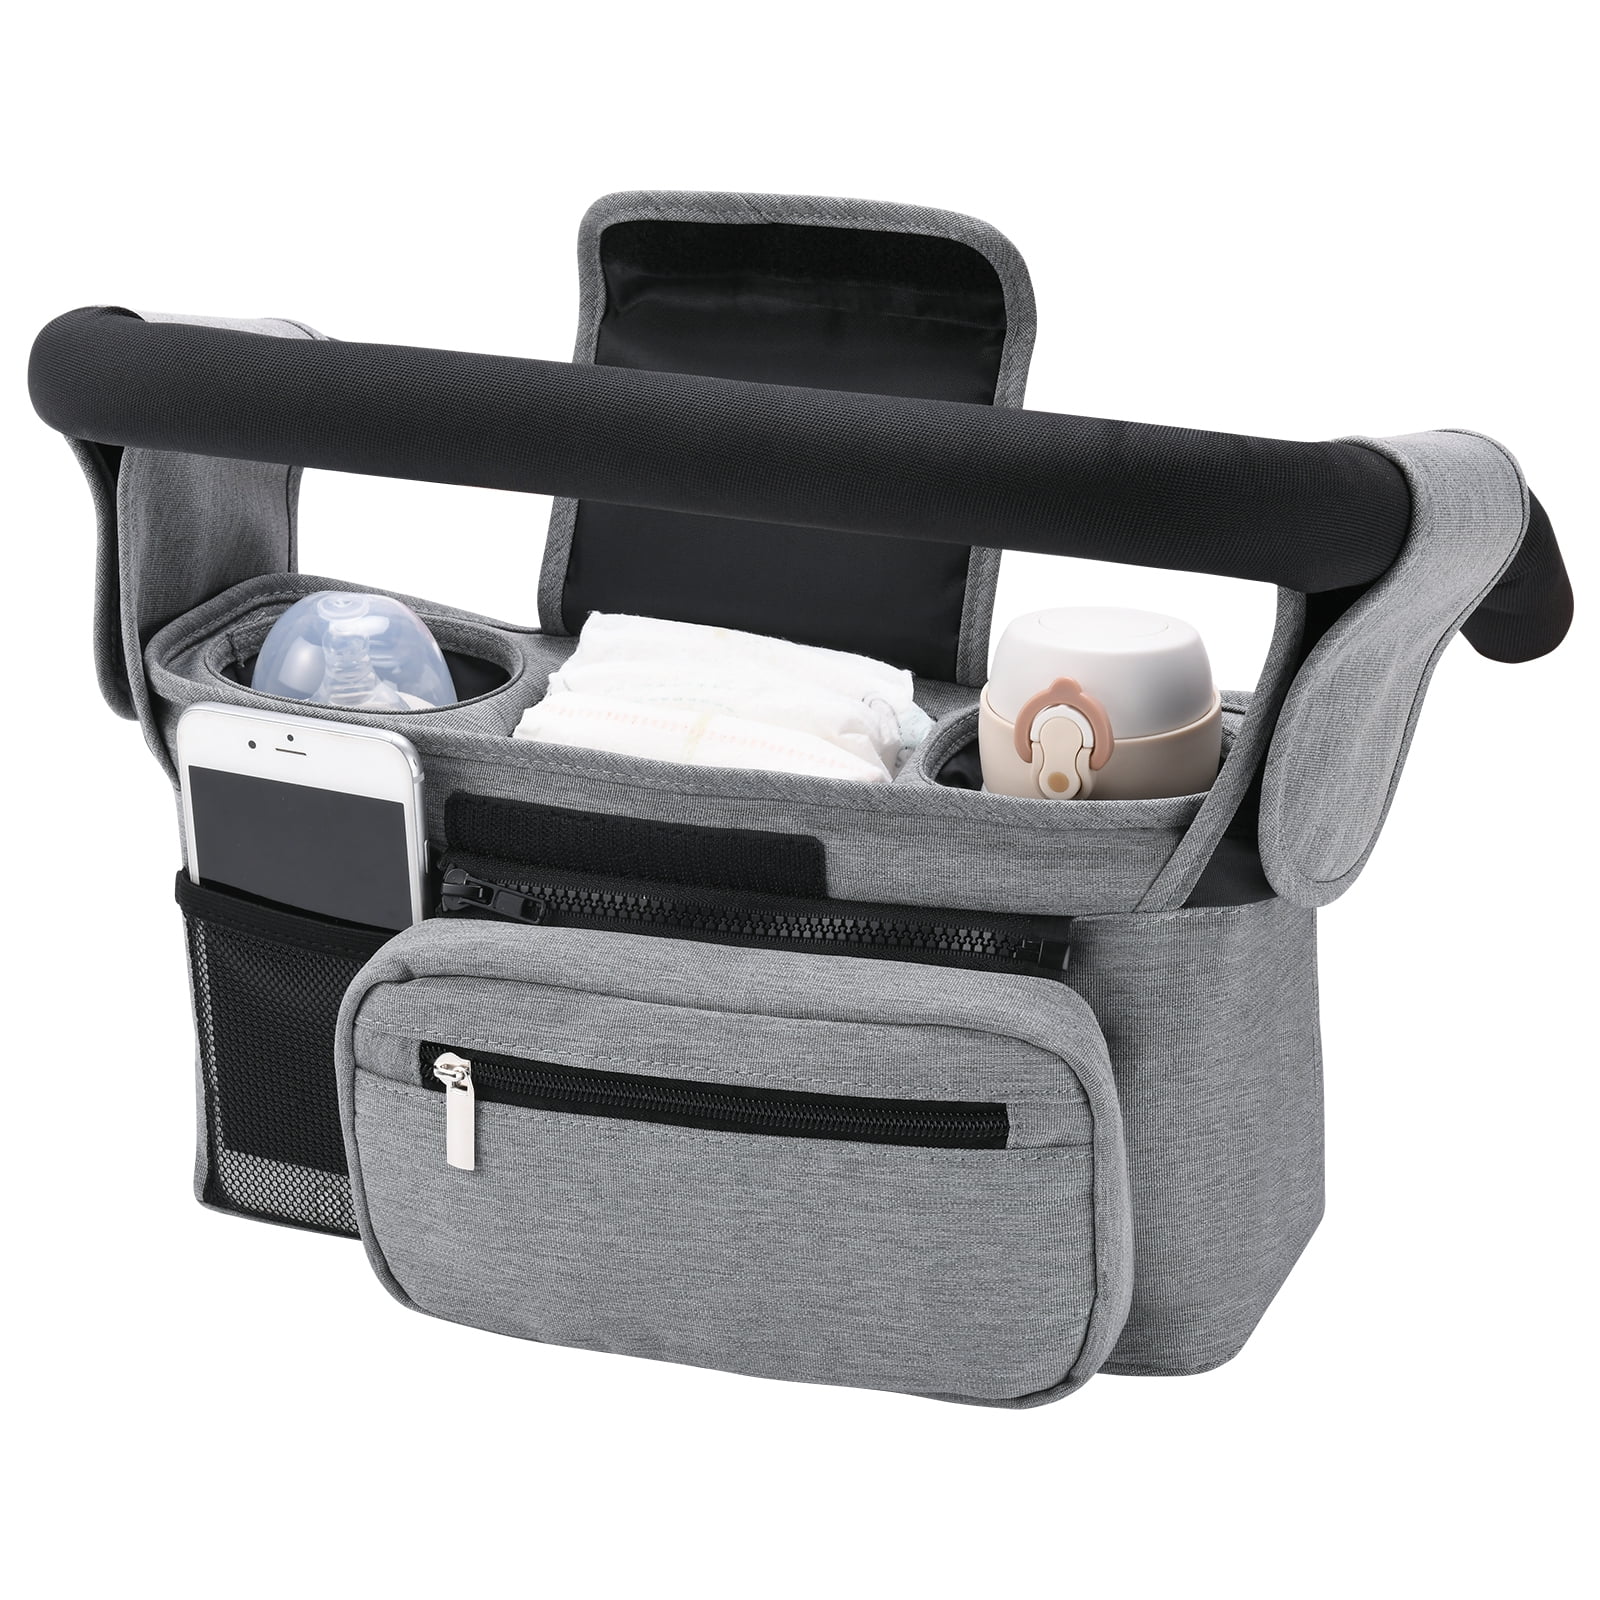 Universal Stroller Organizer Bag Cup Holder Storage Mesh Pocket Diaper Holder L 